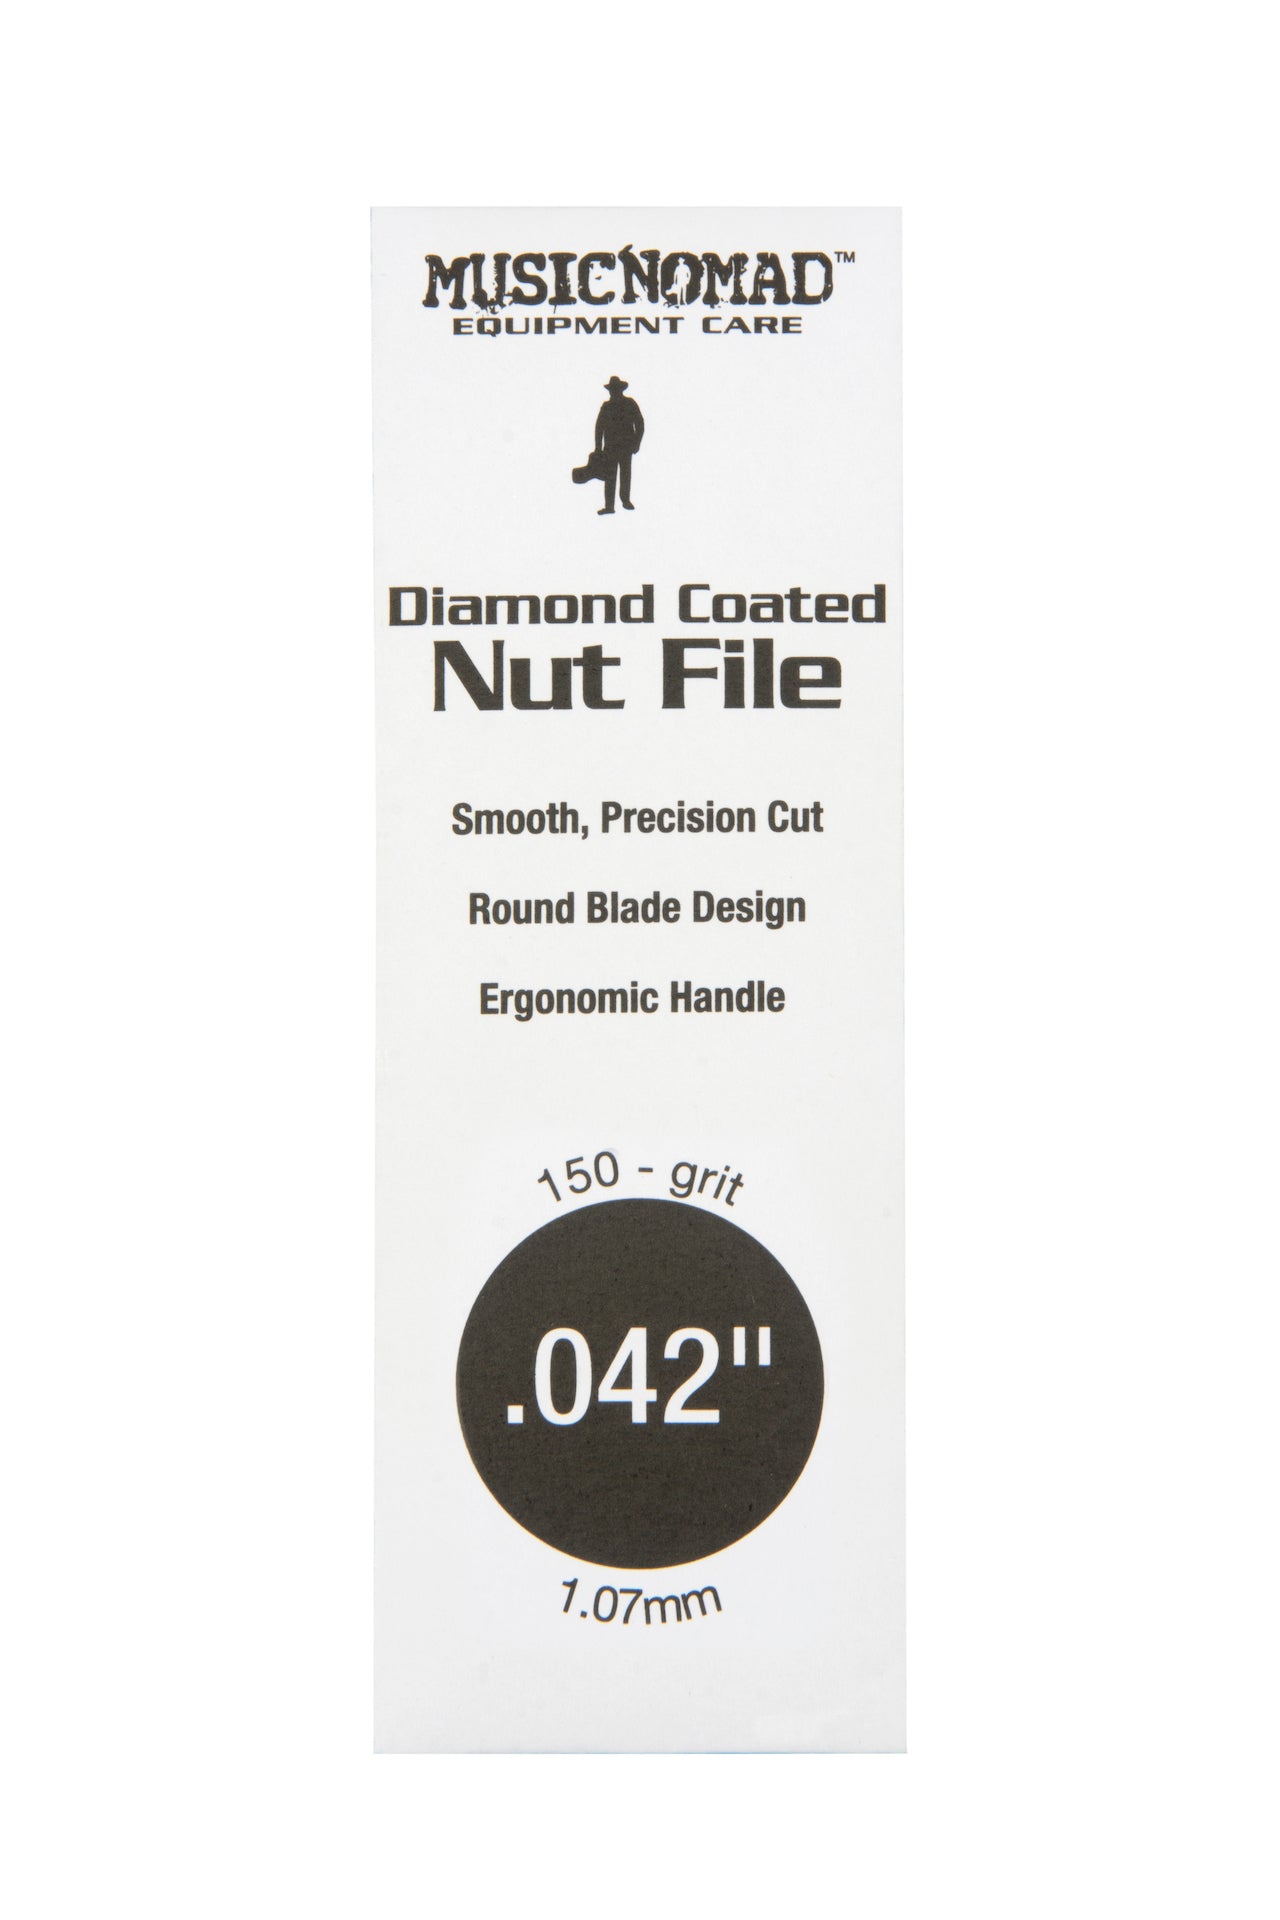 Music Nomad Diamond Coated Nut File Singles - HIENDGUITAR   musicnomad musicnomad